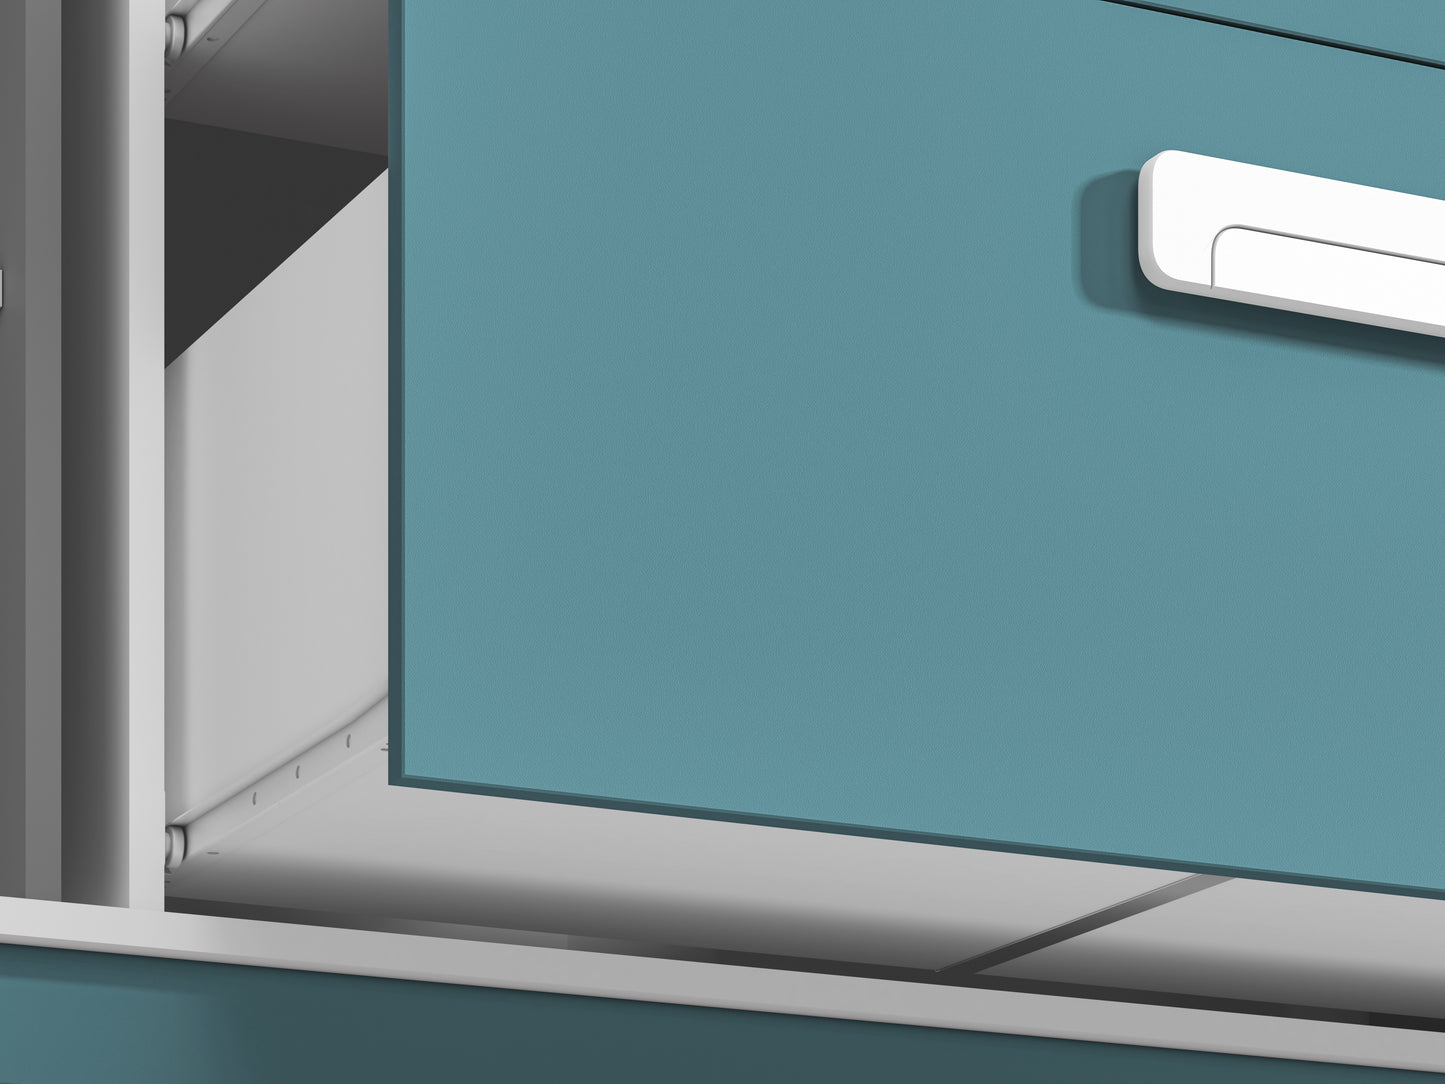 Zbliżenie na front szafki komody MICK, prowadnicę zastosowaną w szufladzie oraz część oryginalnego uchwytu. 